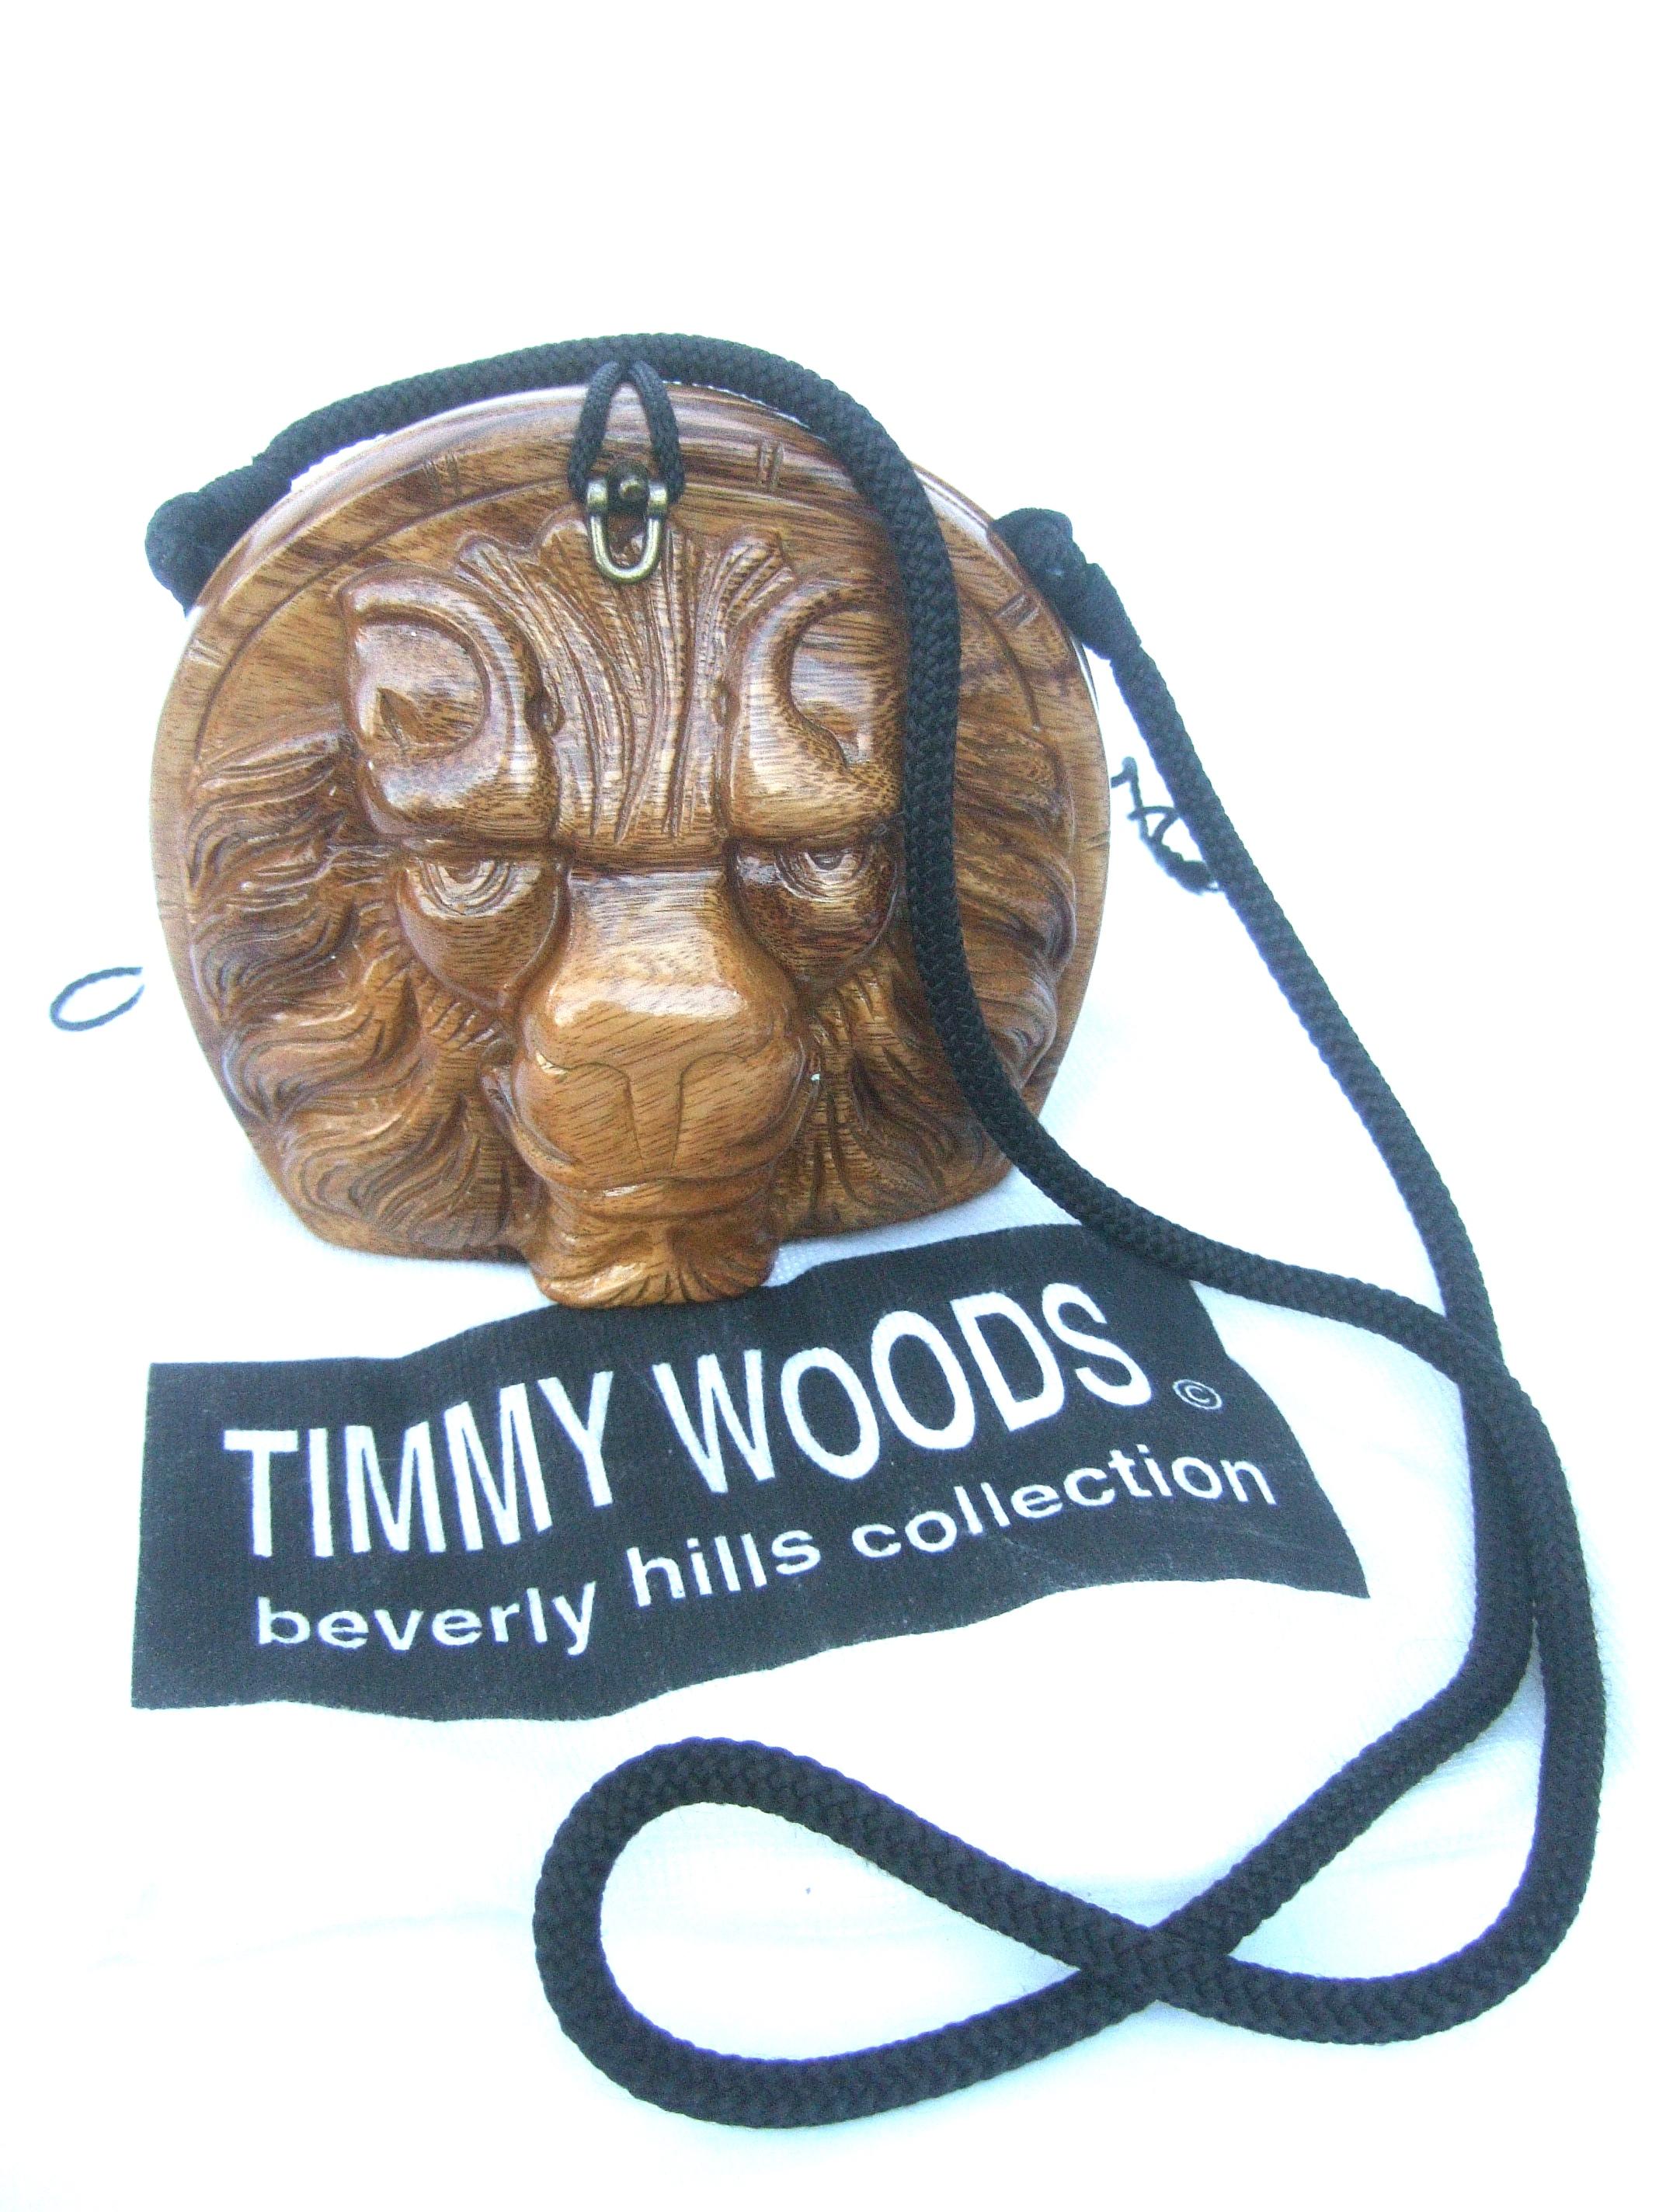 Timmy Woods Beverly Hills Umhängetasche mit geschnitztem Löwenkopf aus Holz 
Die handgeschnitzte Umhängetasche mit Löwenkopf aus Holz ist aus gefallenem Holz gefertigt
bäume auf den Philippinen

Die Planung und Ausführung kann bis zu 30 Tage dauern.